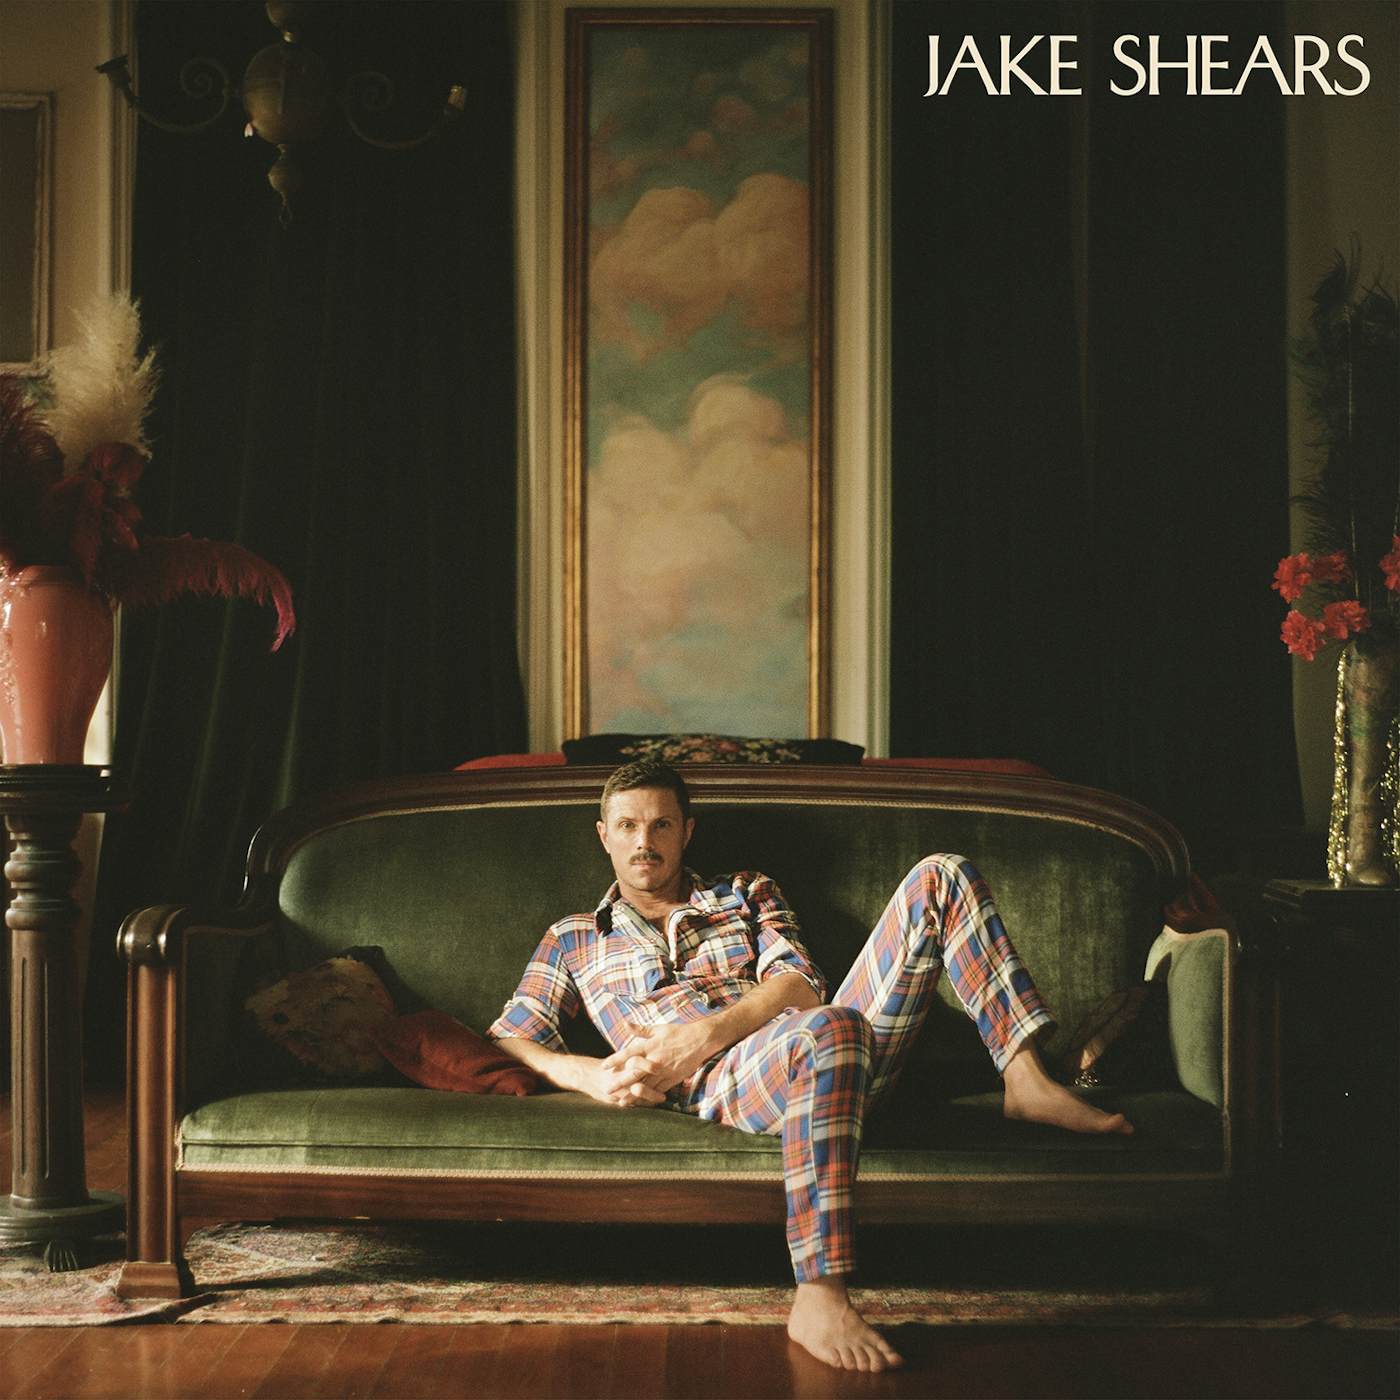 JAKE SHEARS CD